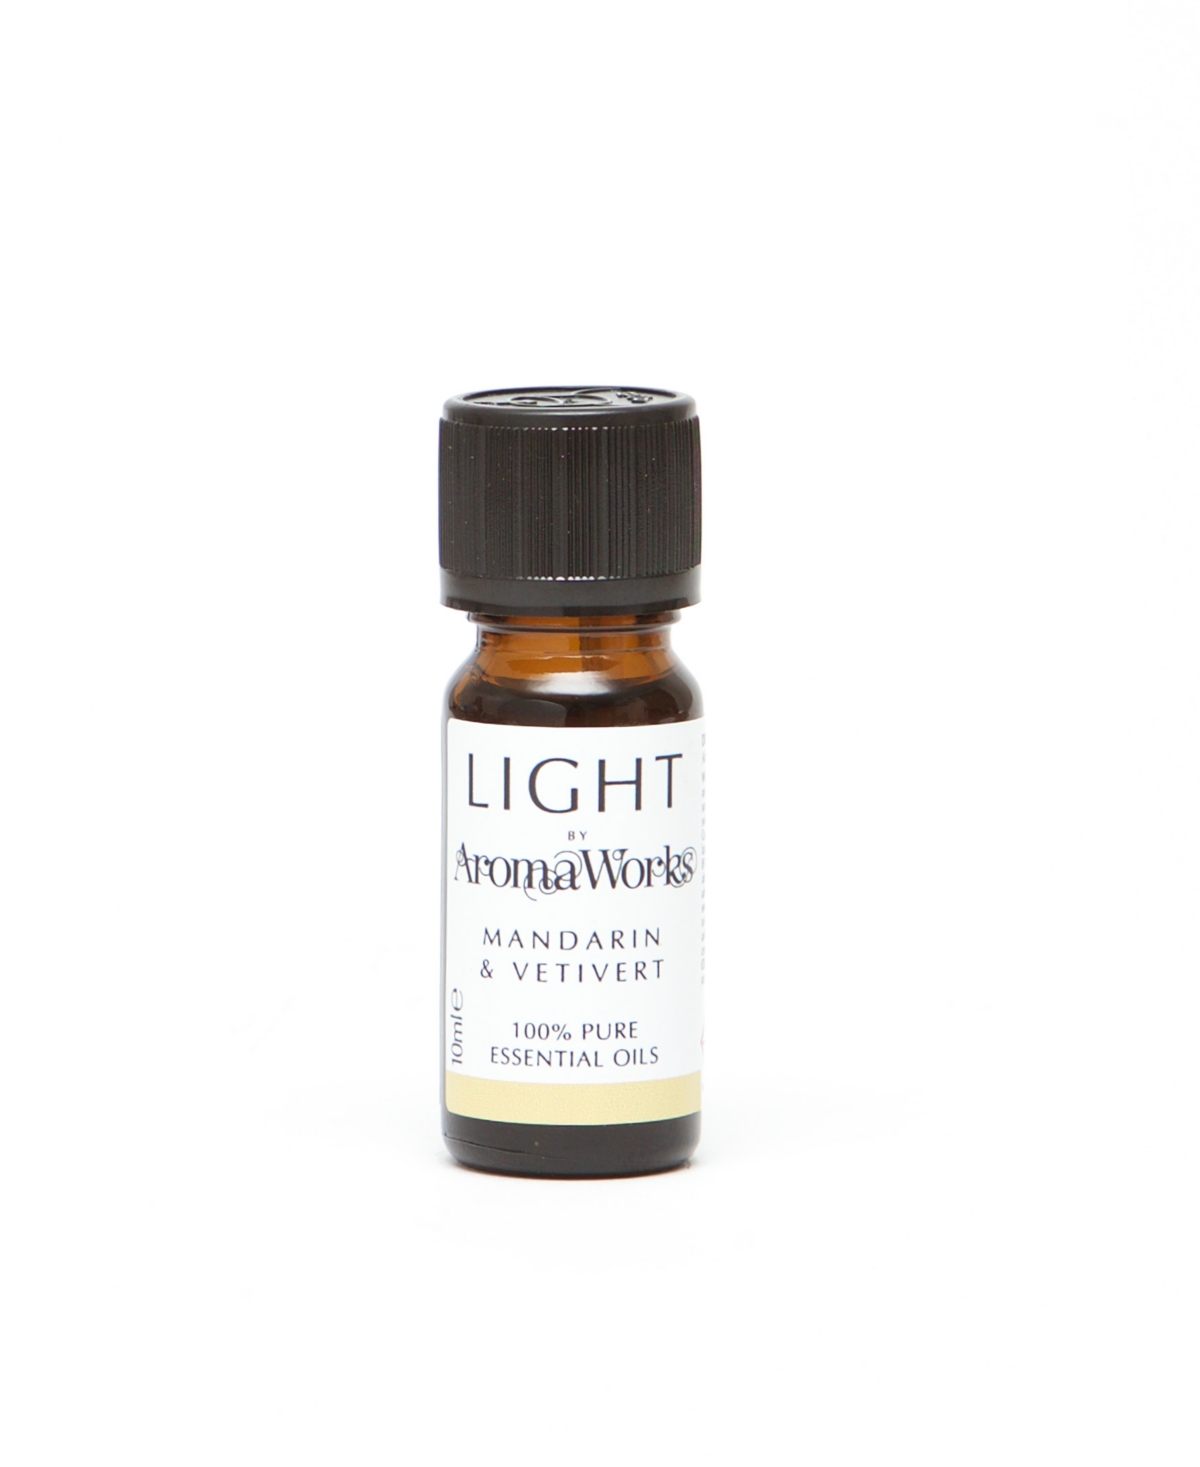 Aromaworks Light Range Mandarin And Vetivert Essential Oil, 10 ml